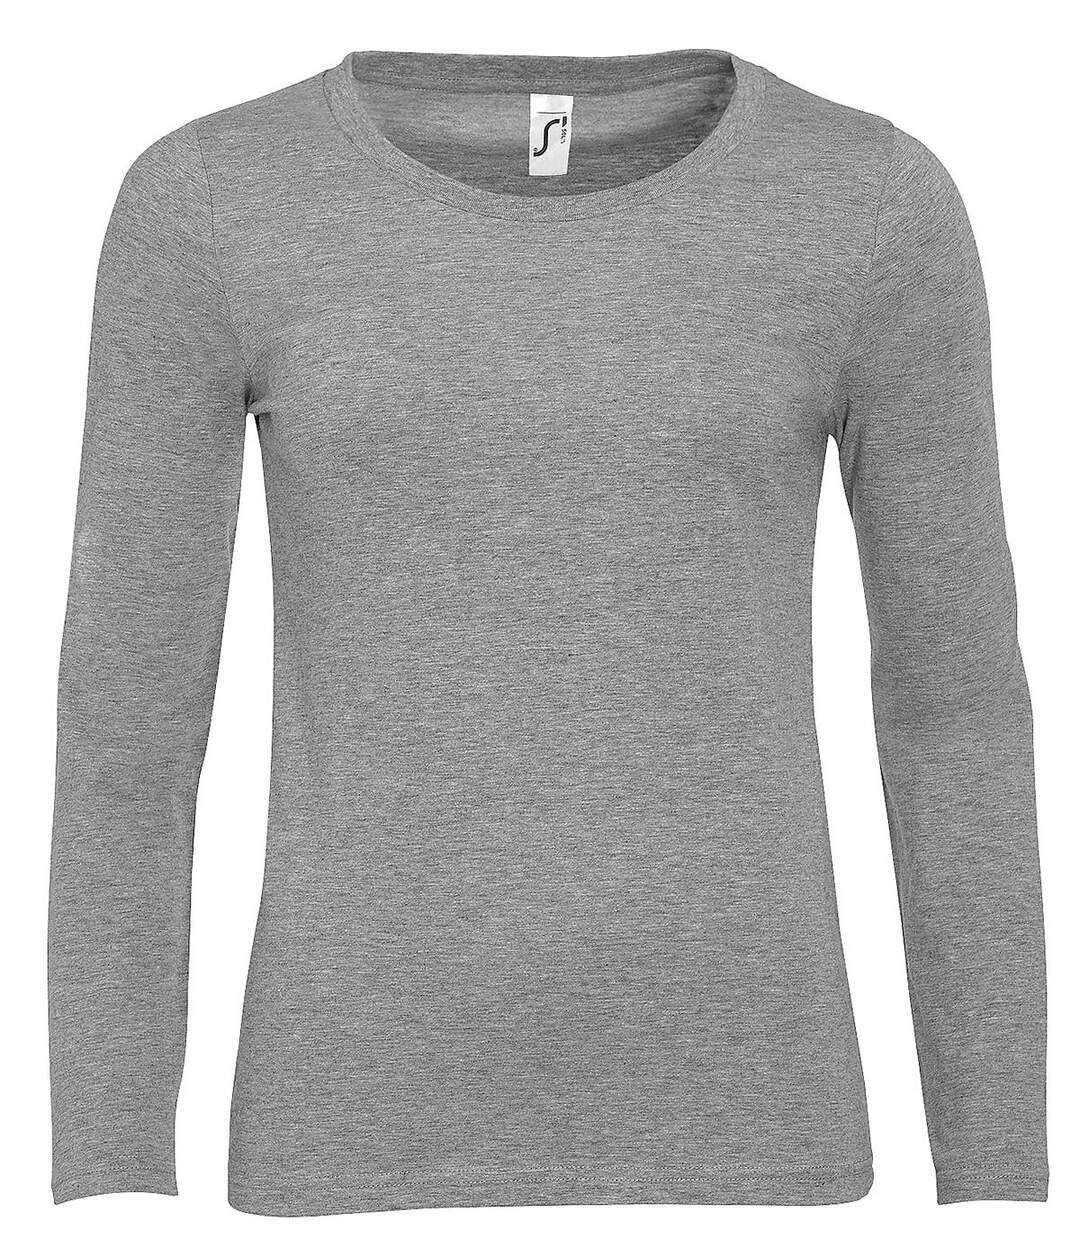 T-shirt manches longues FEMME - 11425 - gris chiné